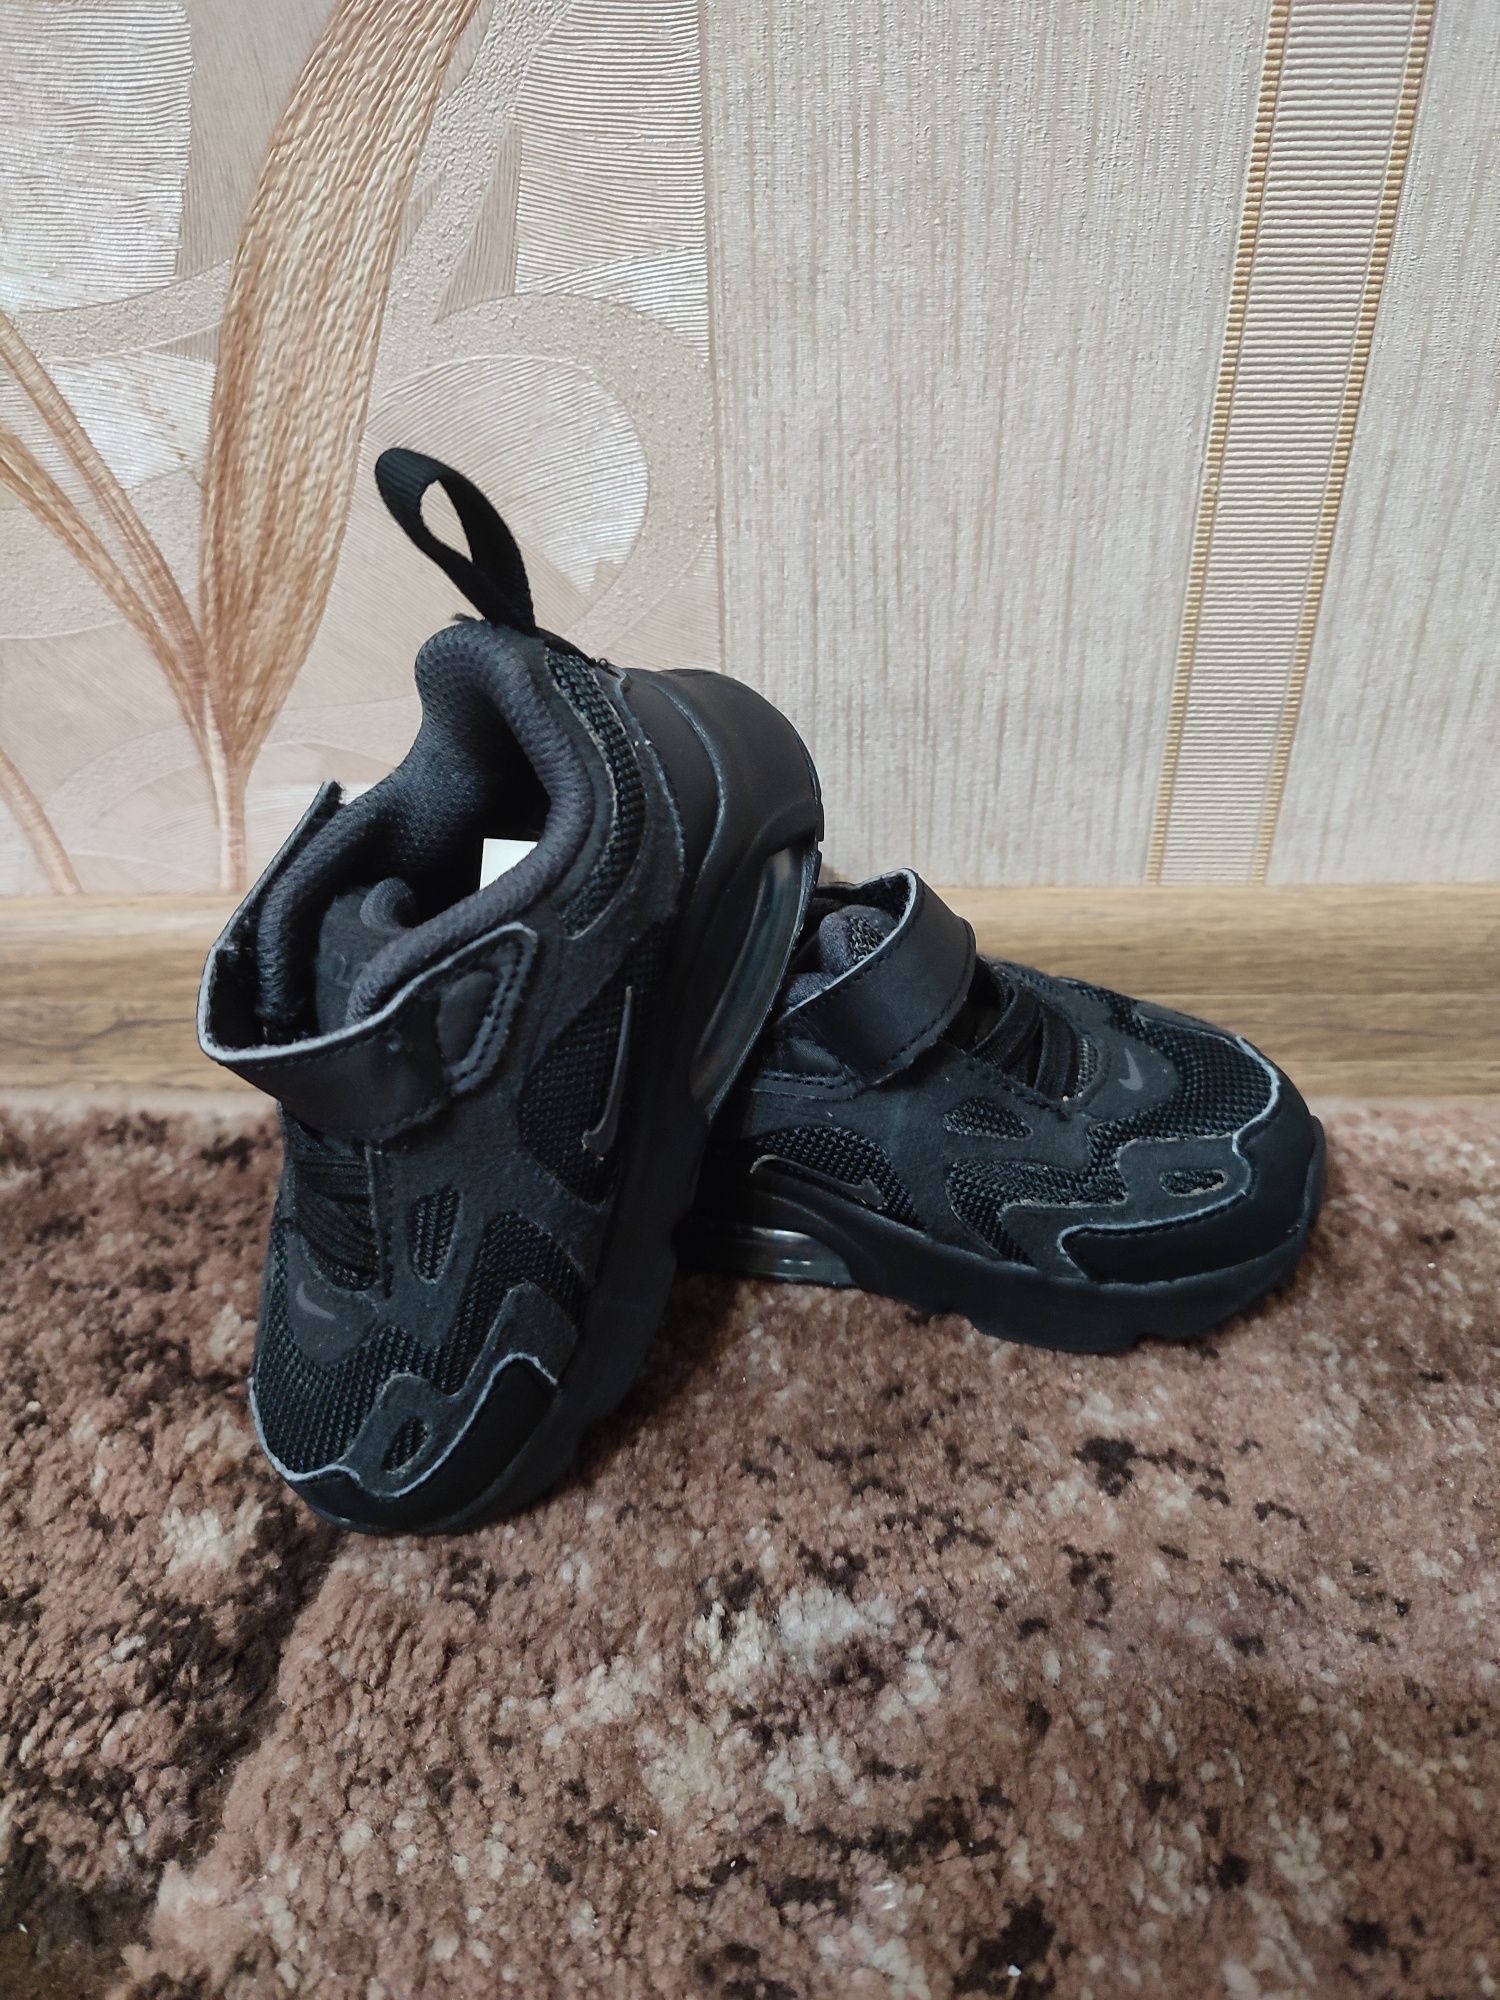 Кросівки Nike Air Max чорні дитячі розмір 21 AT5629-001 13 см